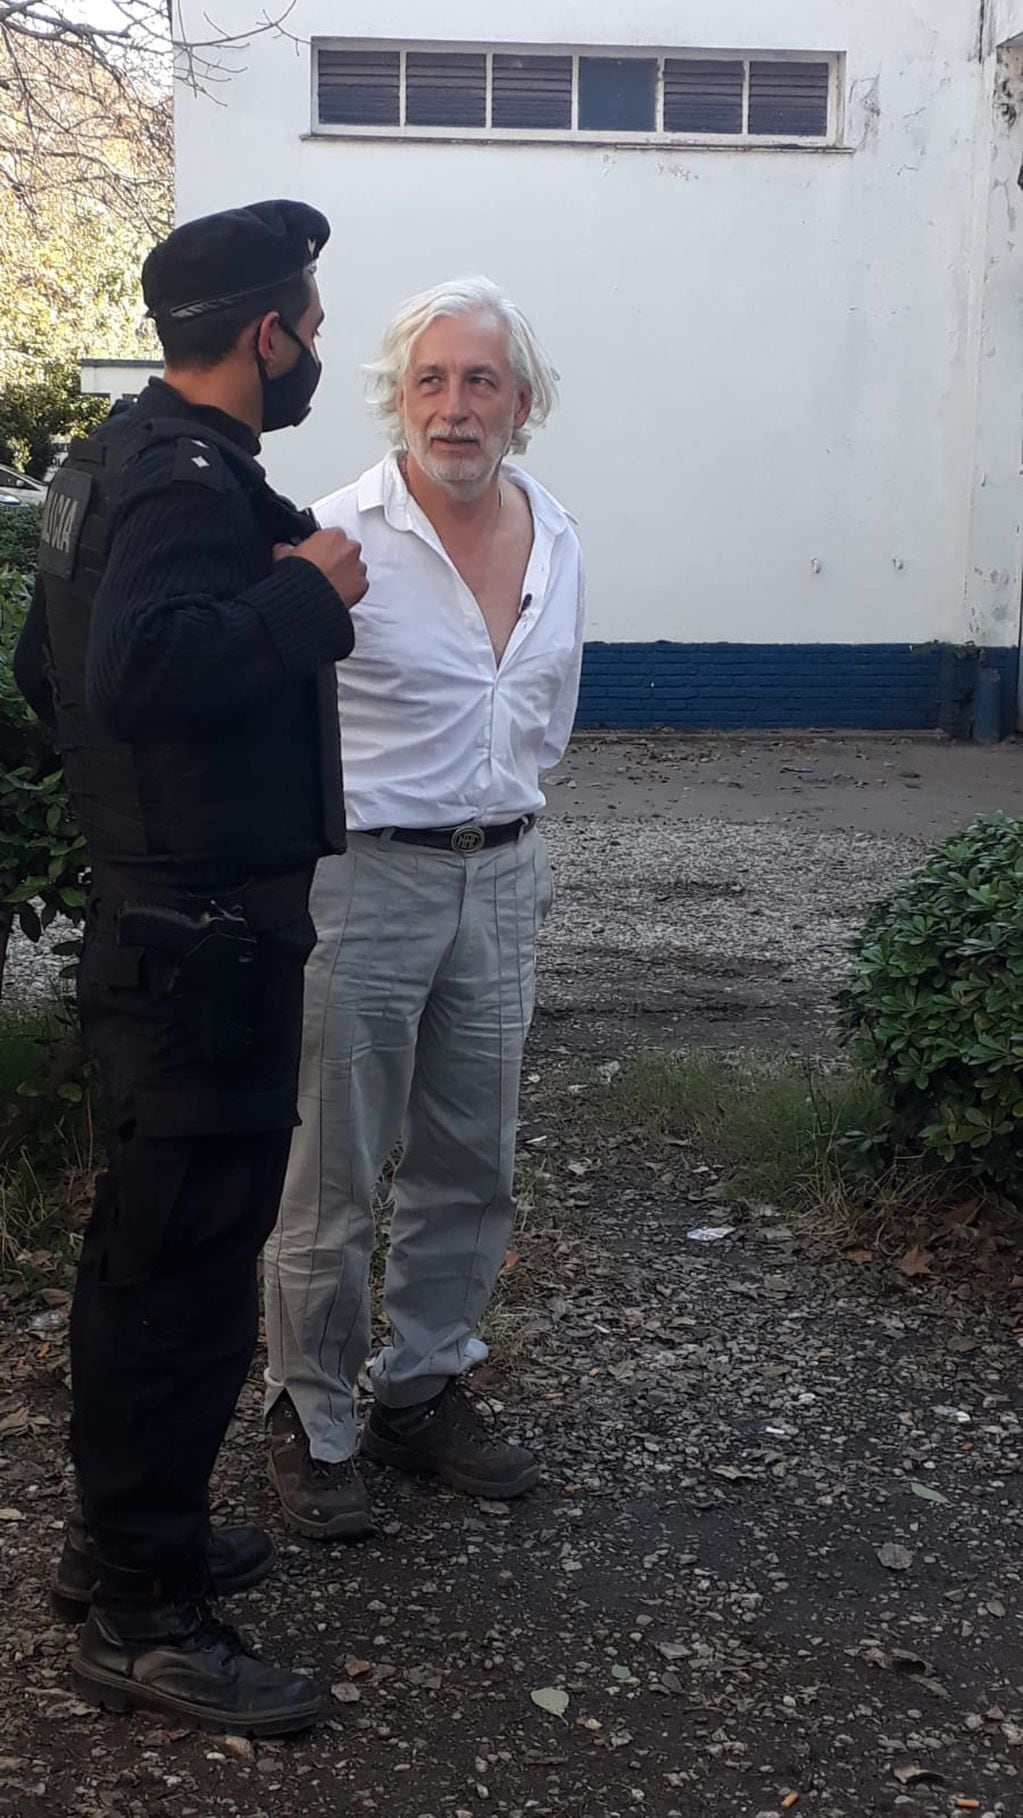 La Policía arrestó a Arriaga y lo trasladó a la Jefatura de la Unidad Regional II este martes por la tarde.